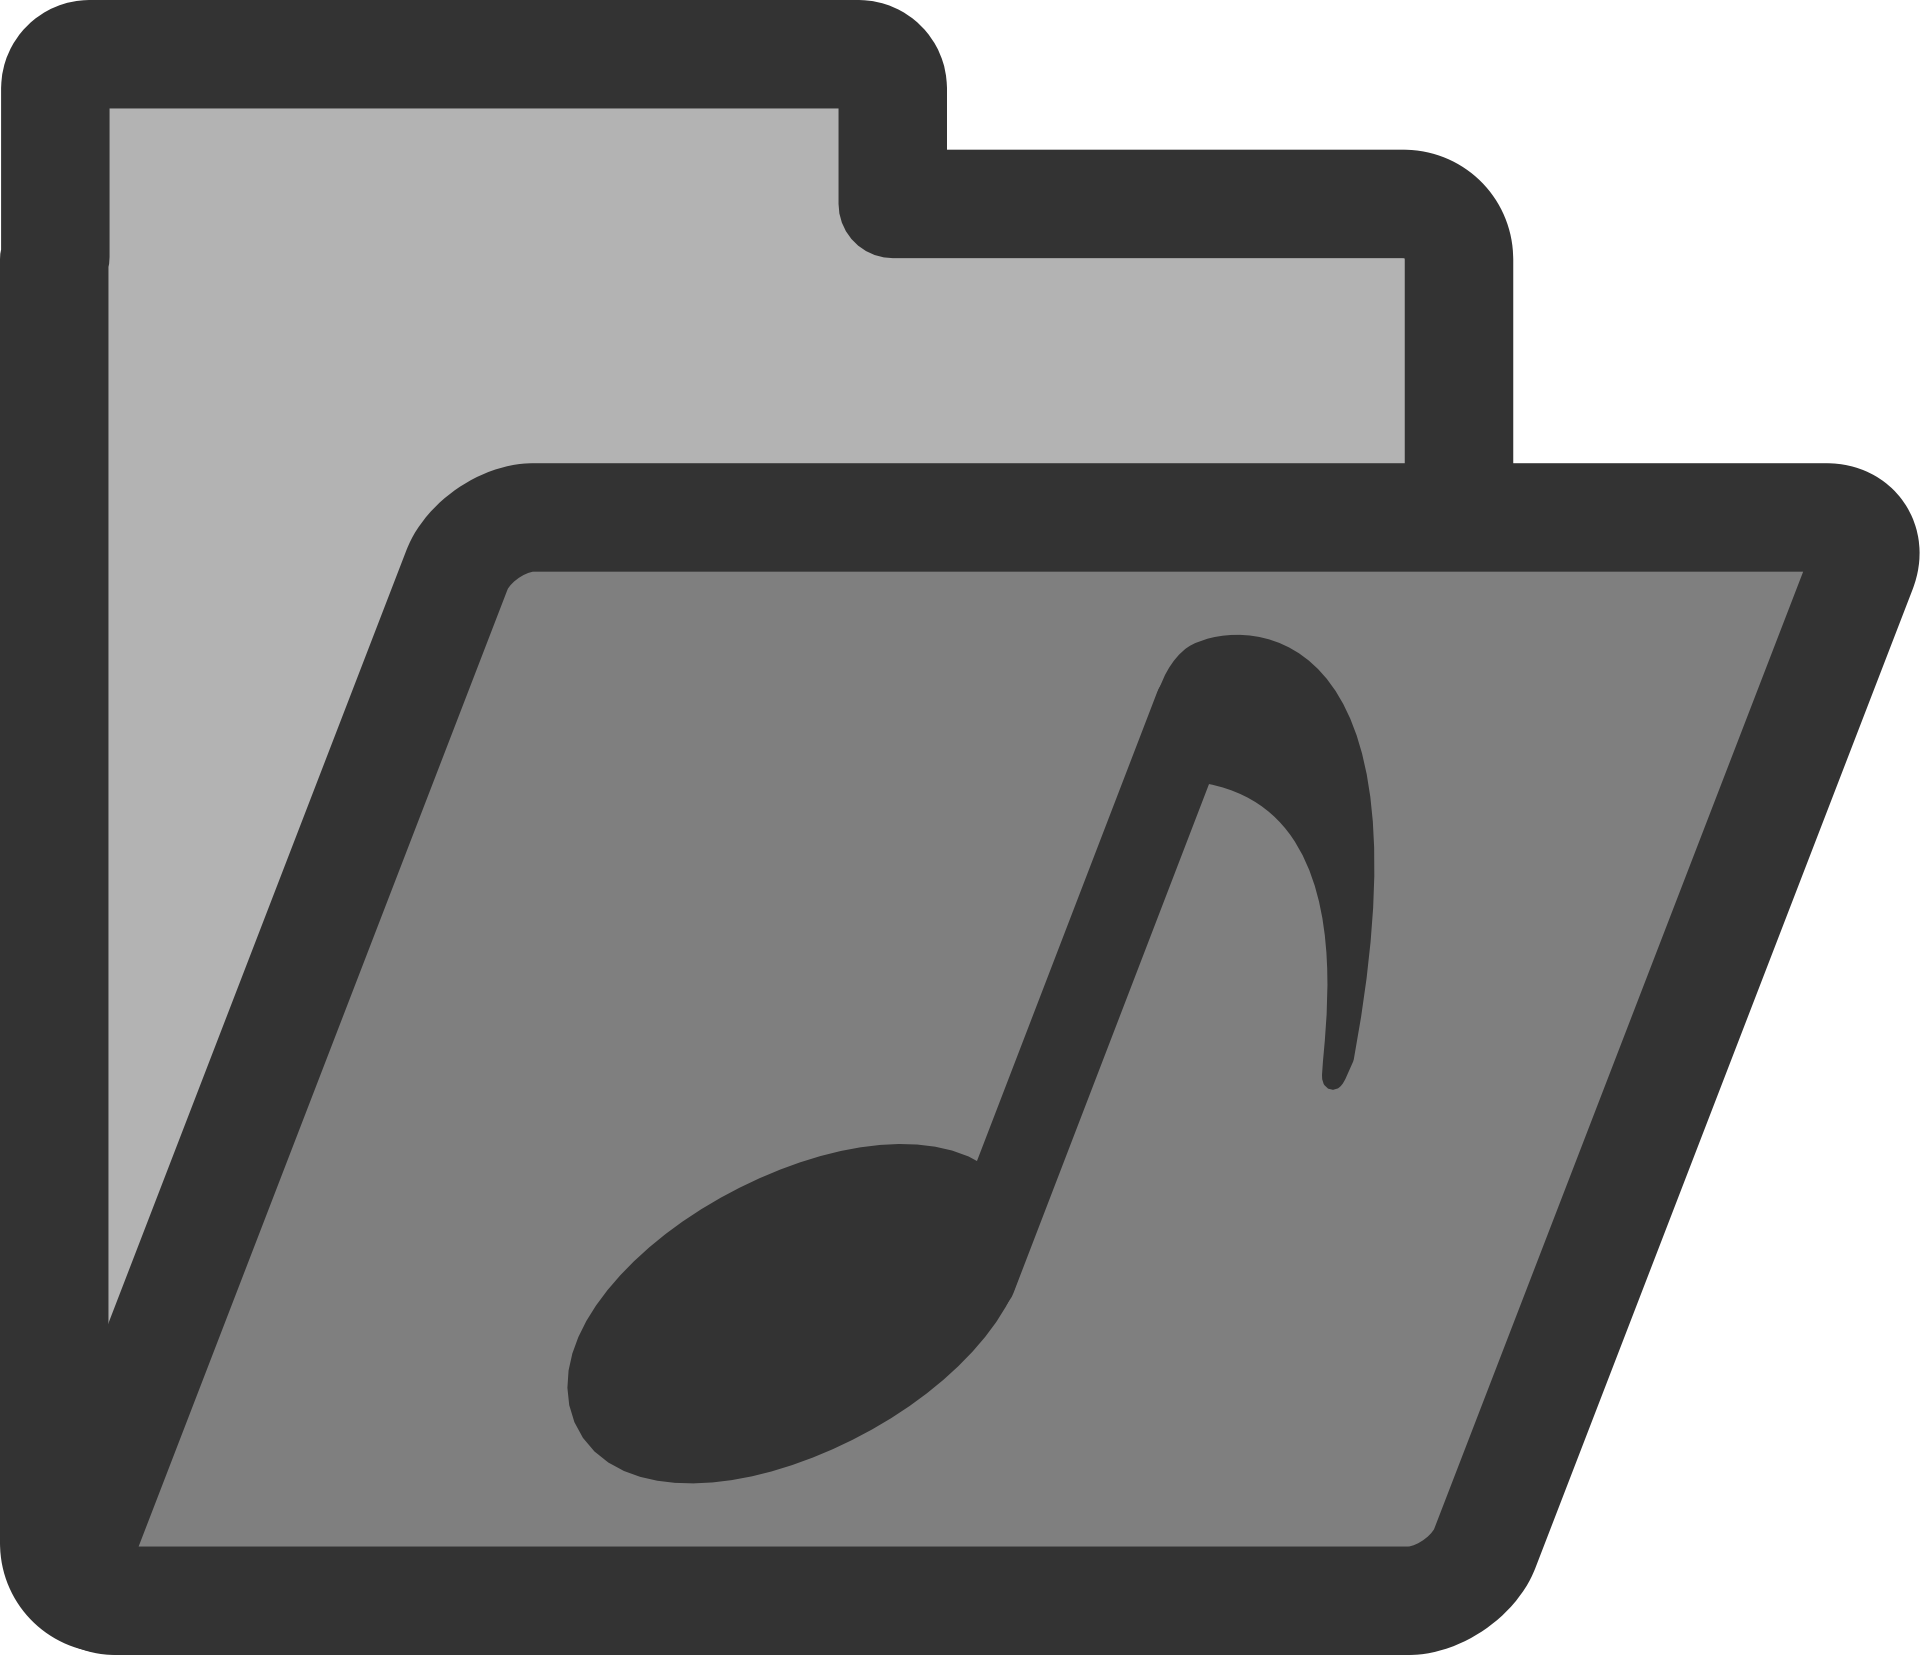 Music folder icon free image